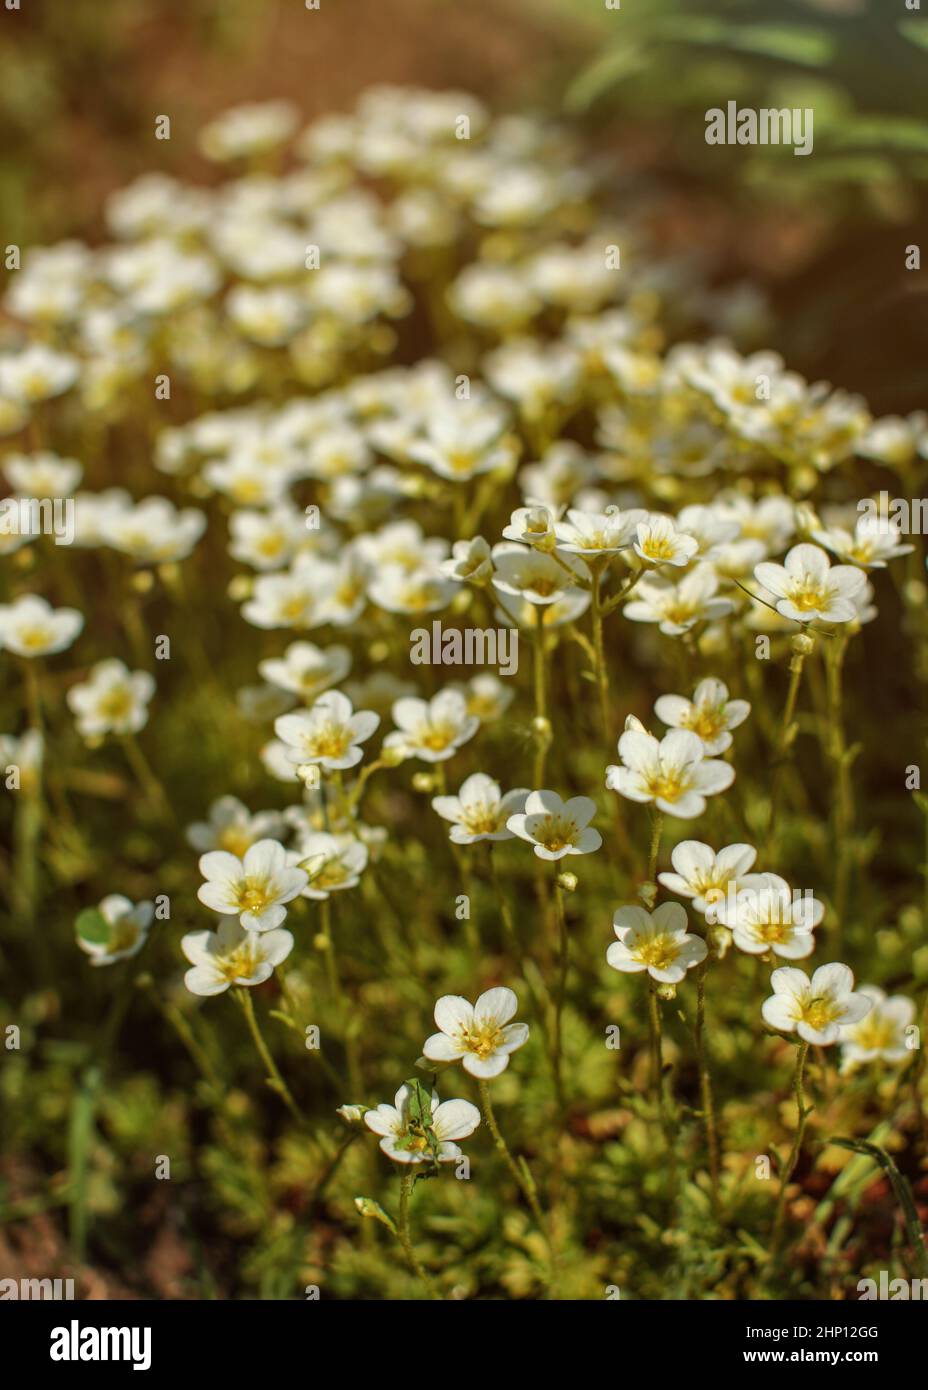 Flache Tiefenschärfe Foto, nur wenige Blüten im Fokus - kleine weiße Blüten am Nachmittag Sonne beleuchtet. Abstrakte Frühling Hintergrund. Stockfoto